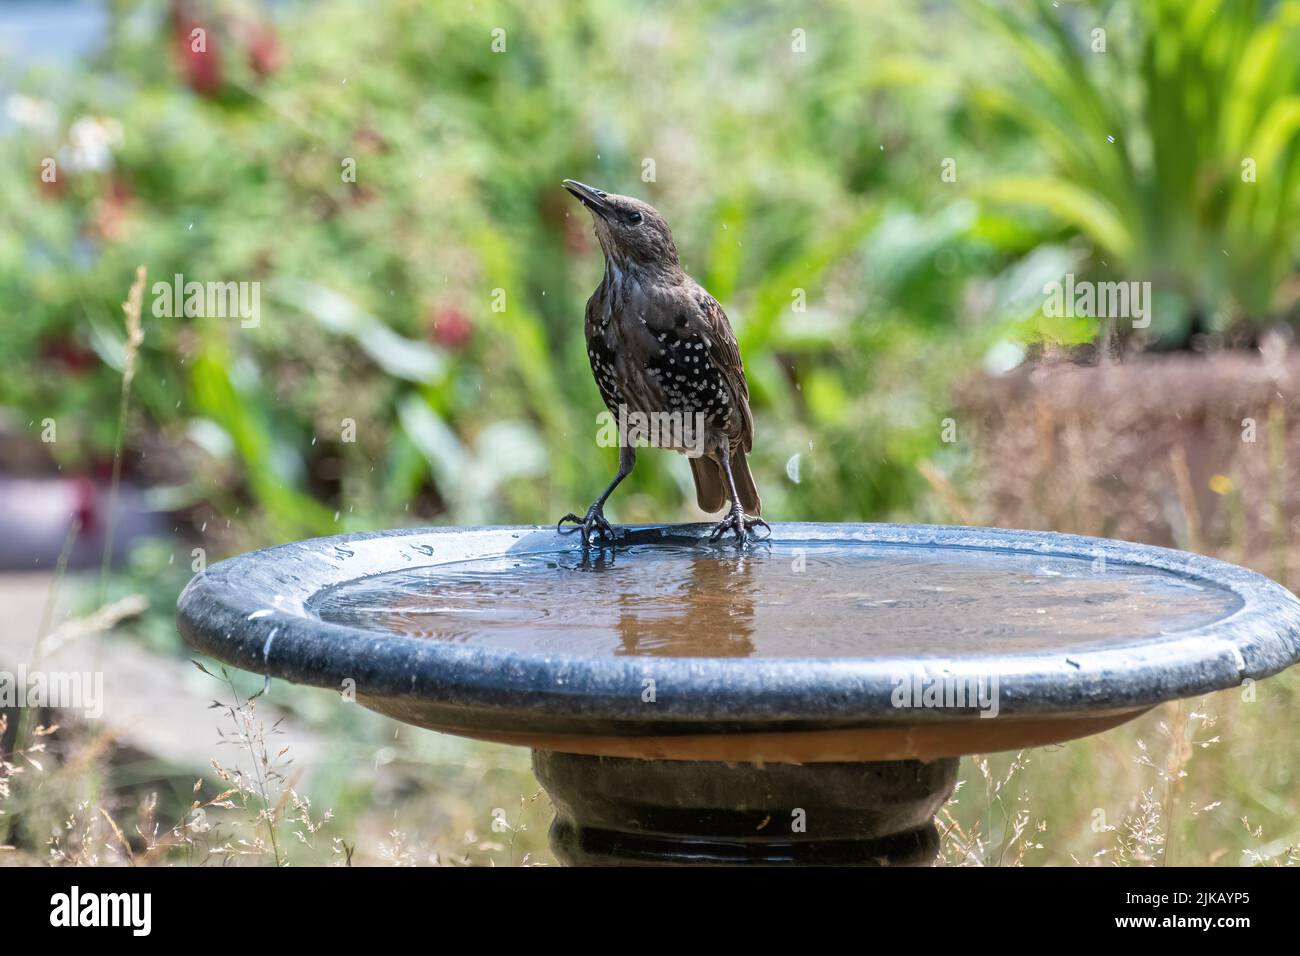 Une étoile sur un bain d'oiseau ayant une boisson d'eau, Angleterre, Royaume-Uni Banque D'Images